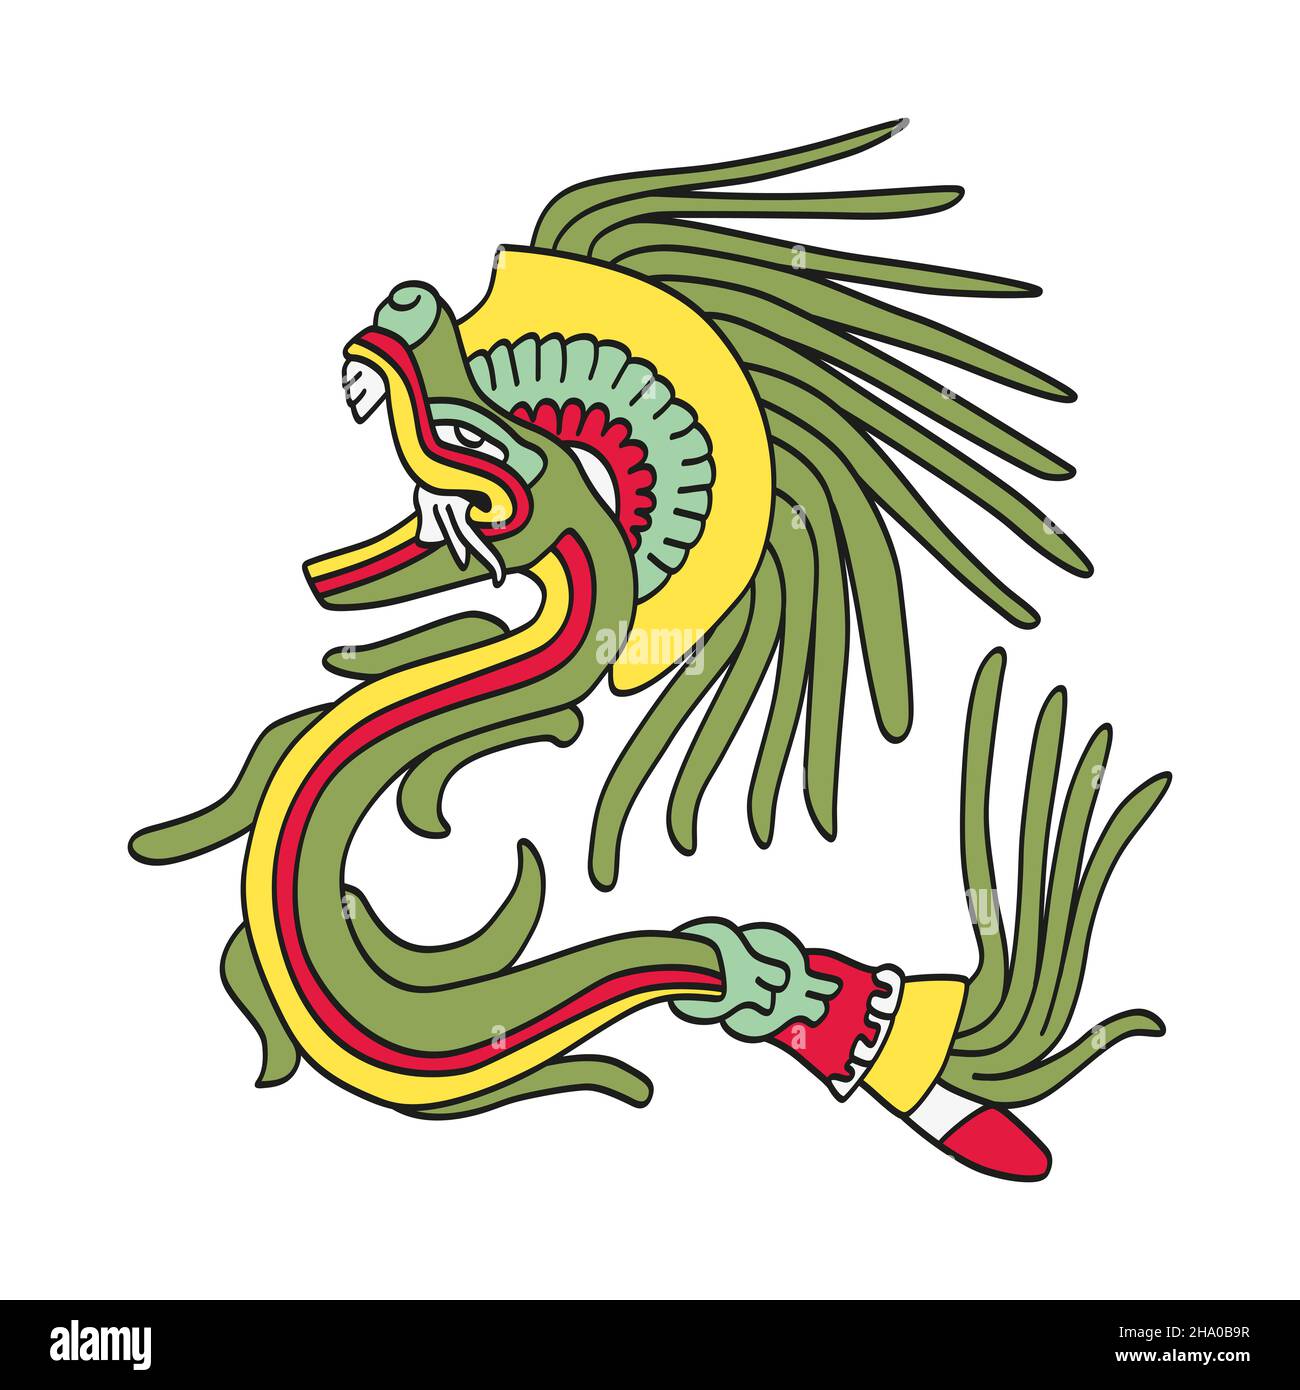 Quetzalcoatl, gefiederte Schlange, aztekischer gott, wie im Codex Telleriano-Remensis dargestellt. Er war mit Göttern des Windes und des Planeten Venus verwandt. Stockfoto